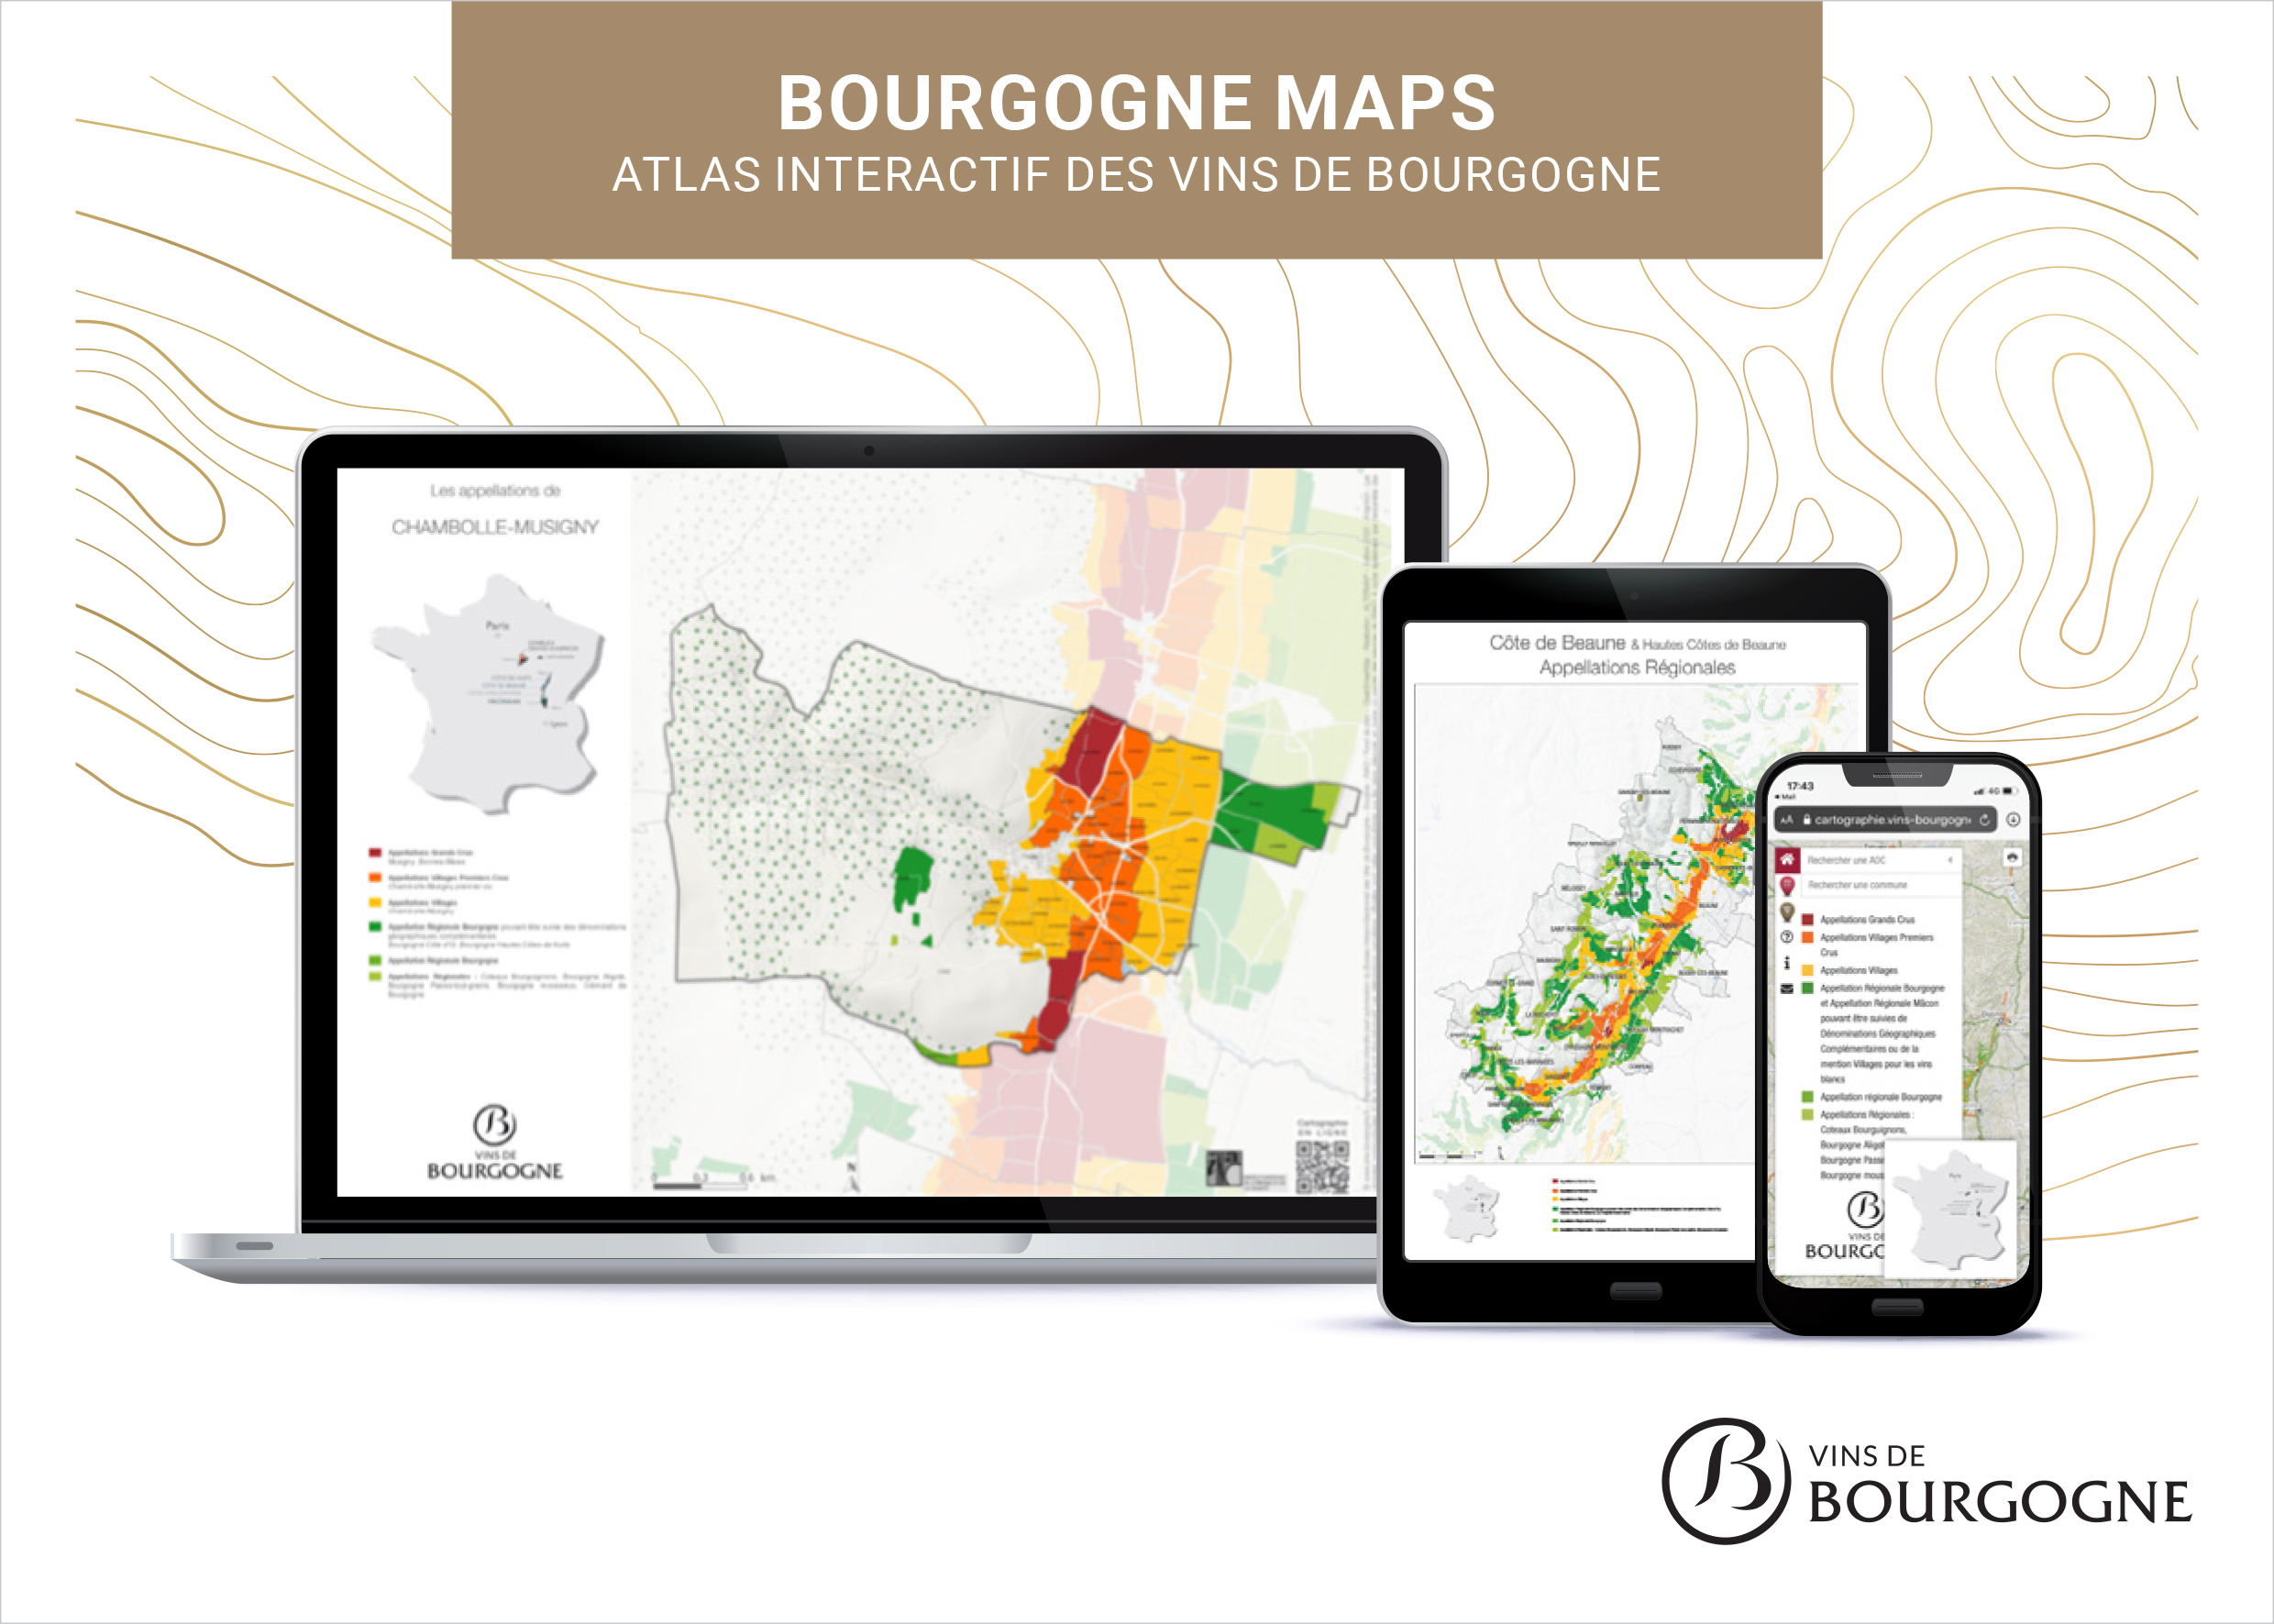 Bourgogne Maps, découvrez l’atlas interactif des vins de Bourgogne